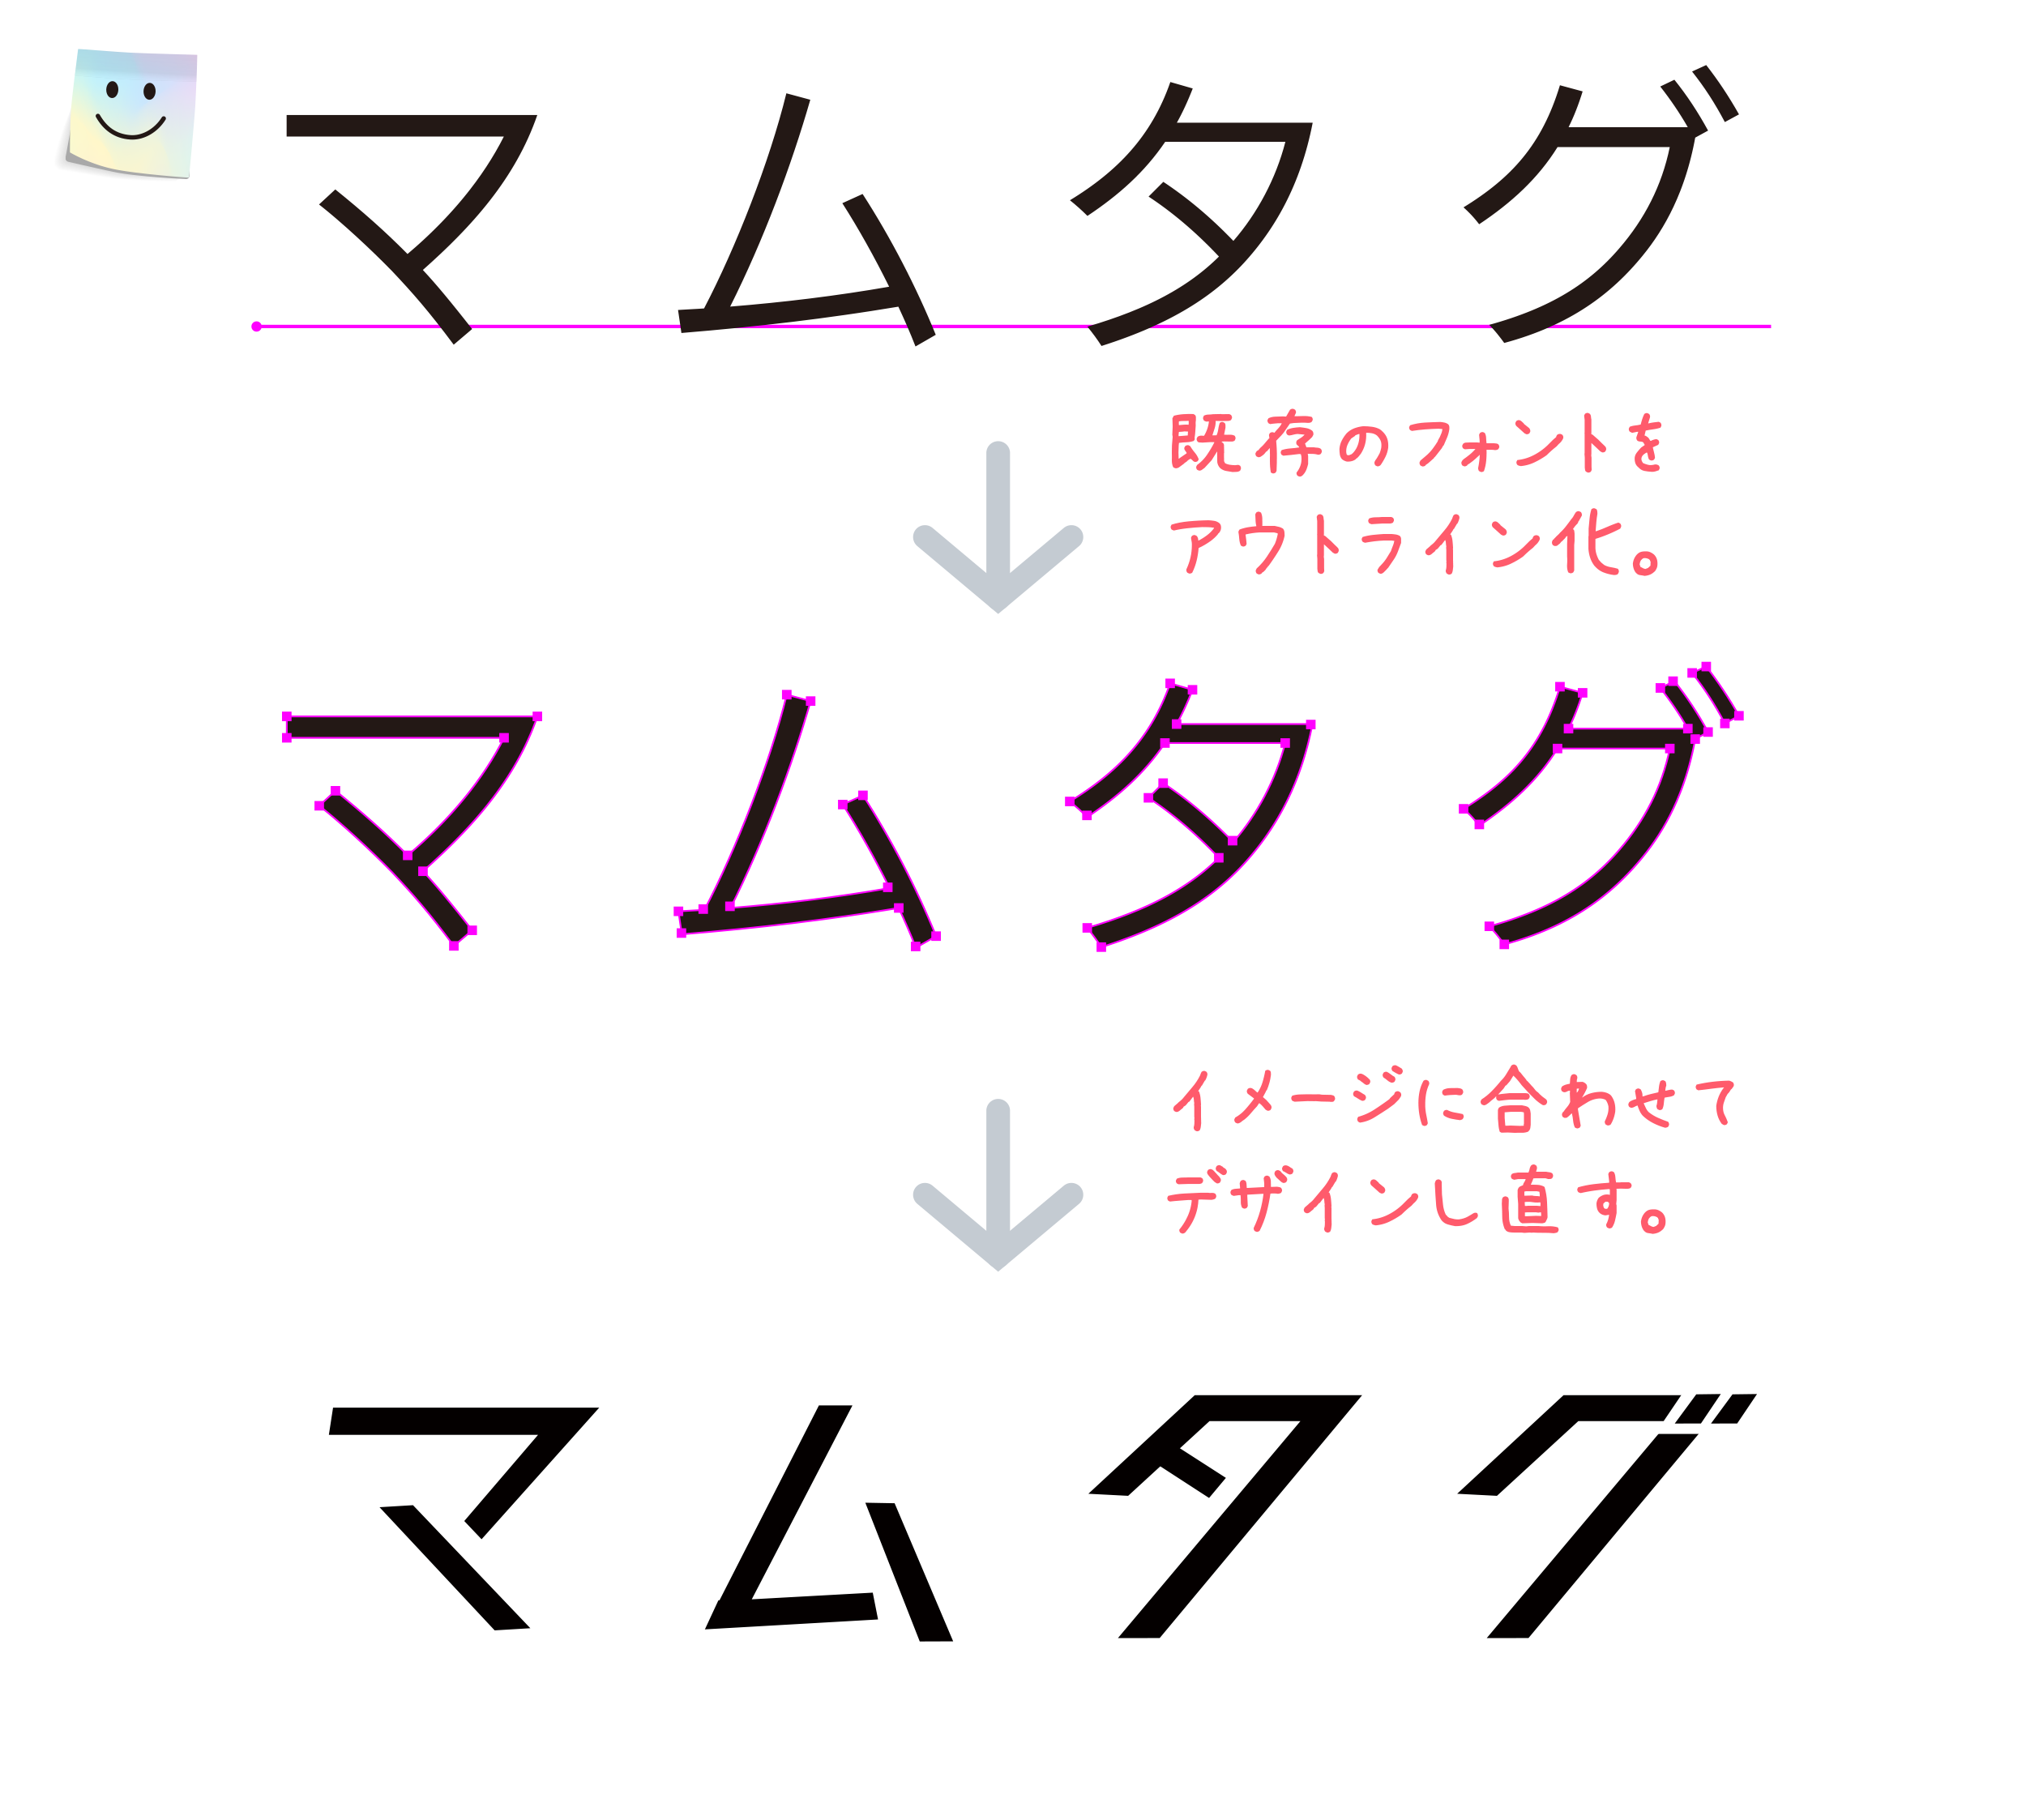 【Illustrator】フォントをアウトライン化してロゴデザインする方法